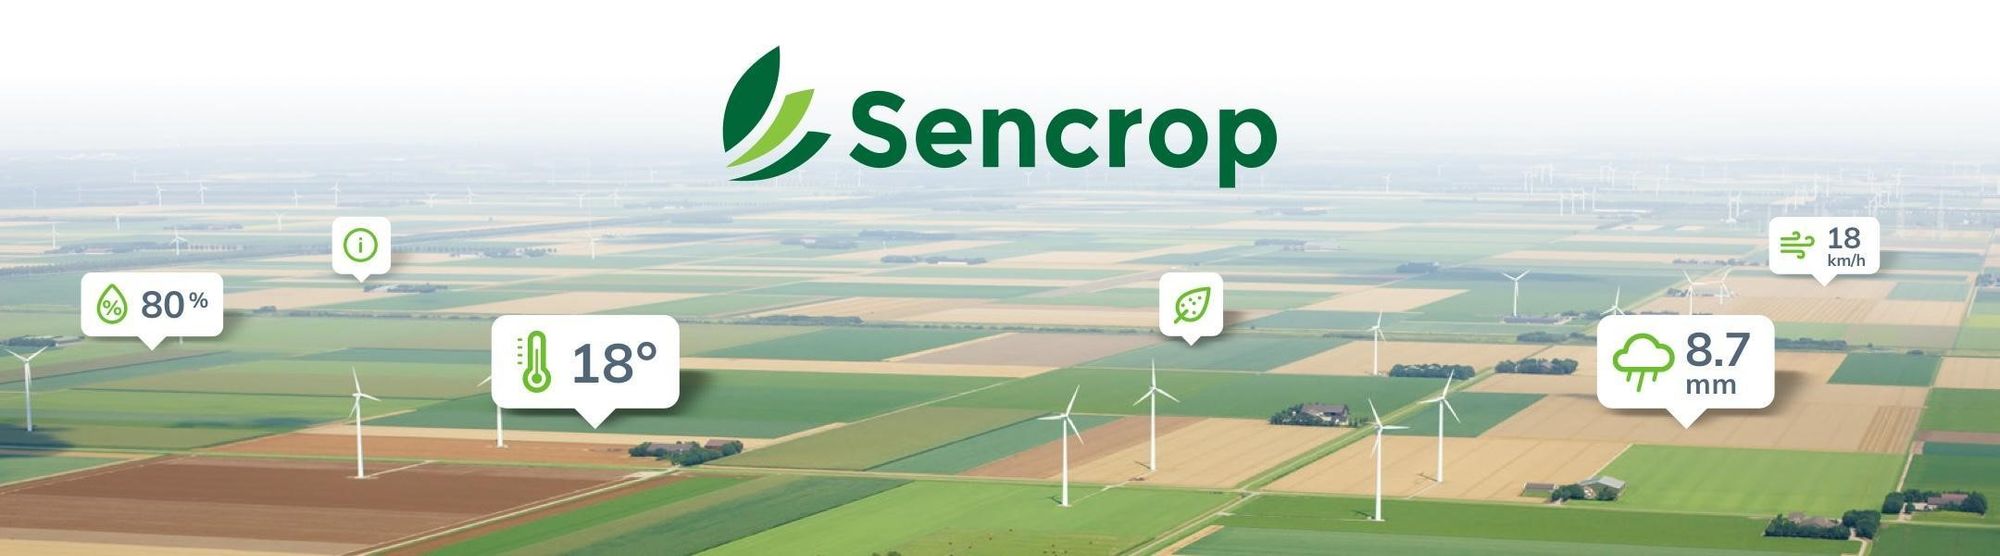 Comunicado de prensa: Sencrop instala su estación número 20.000 en solo cinco años y duplica su cobertura europea en el último año